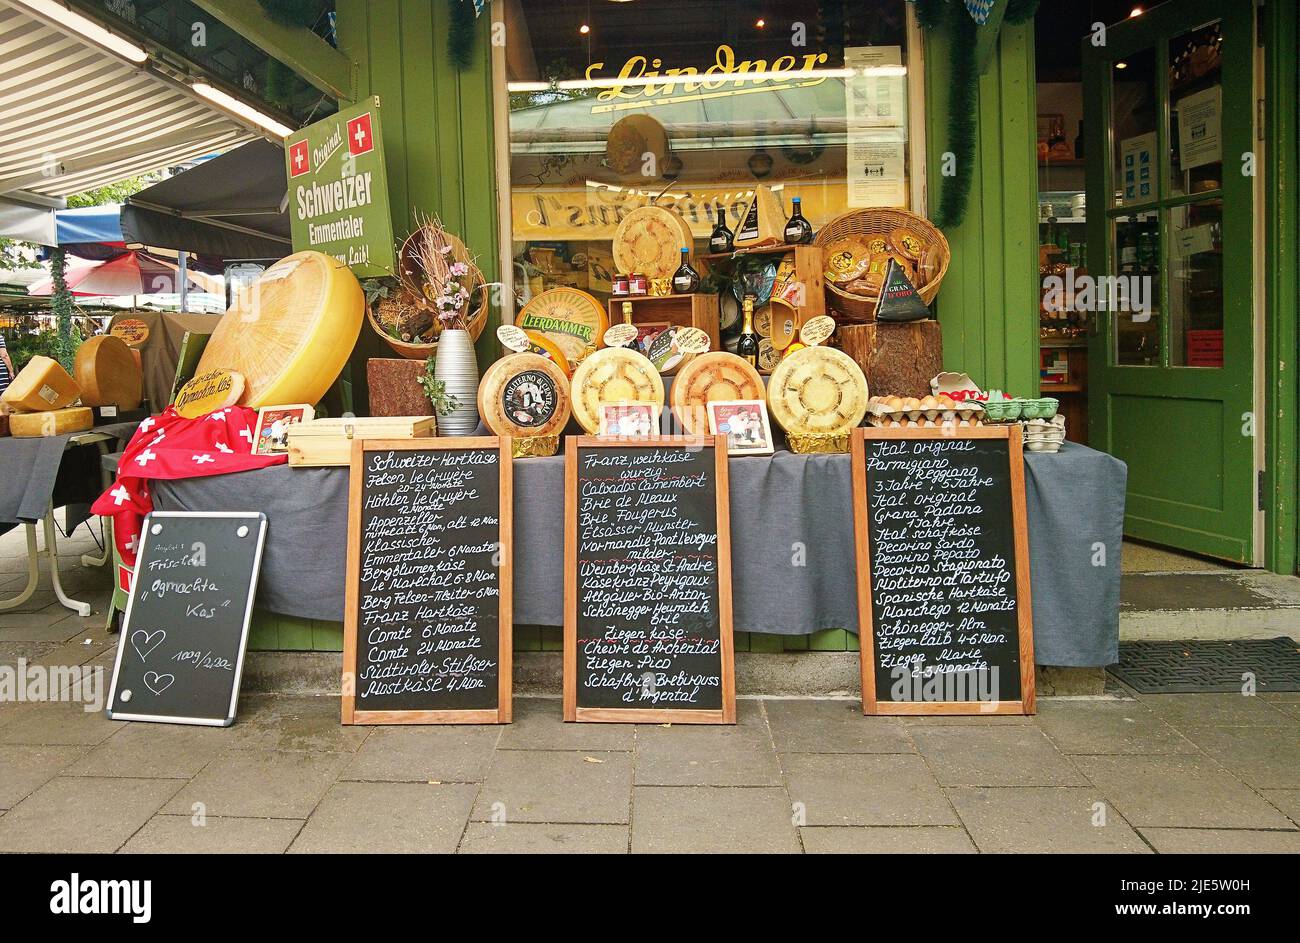 Le magasin de spécialités au fromage du Deli au Viktualienmarkt, point gastronomique à Munich - Allemagne, avec les offres quotidiennes sur les tableaux Banque D'Images